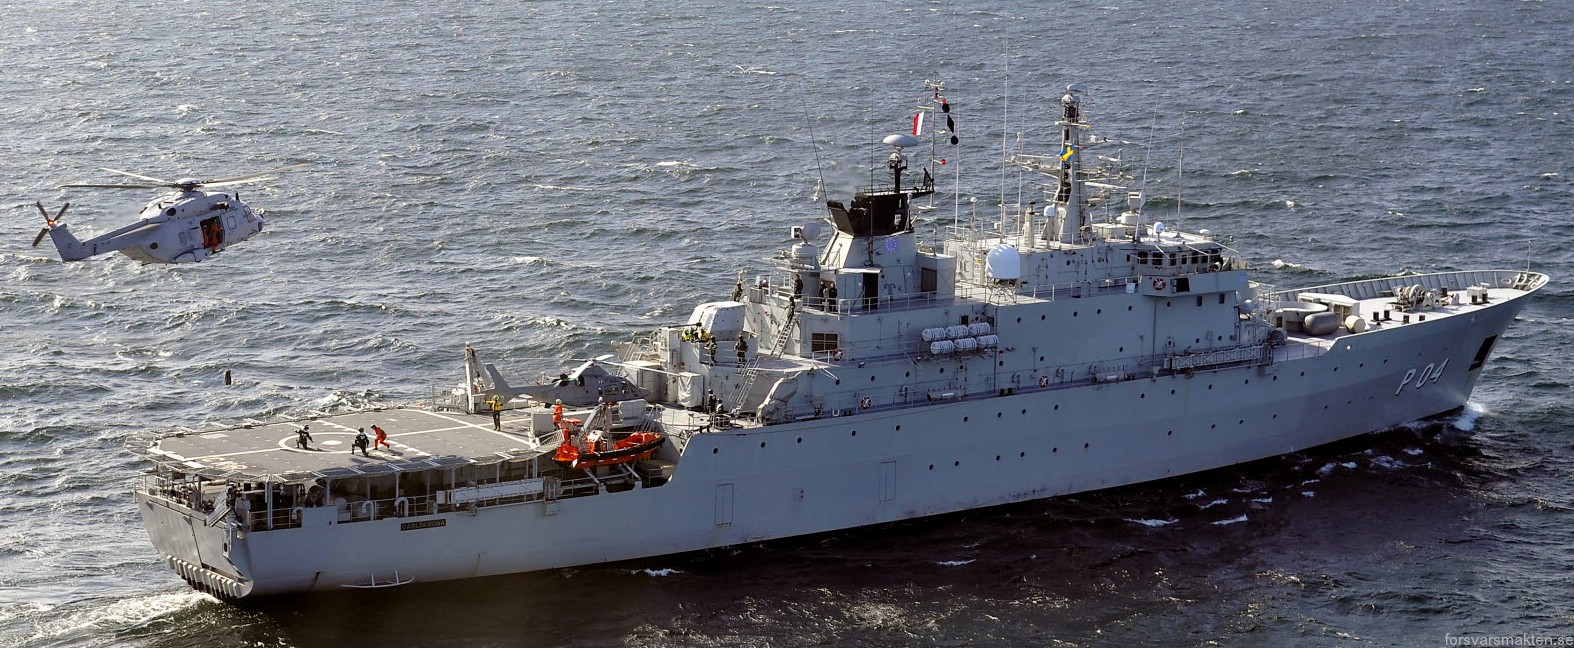 p04 hswms carlskrona hms ocean patrol vessel opv swedish navy svenska marinen försvarsmakten 06